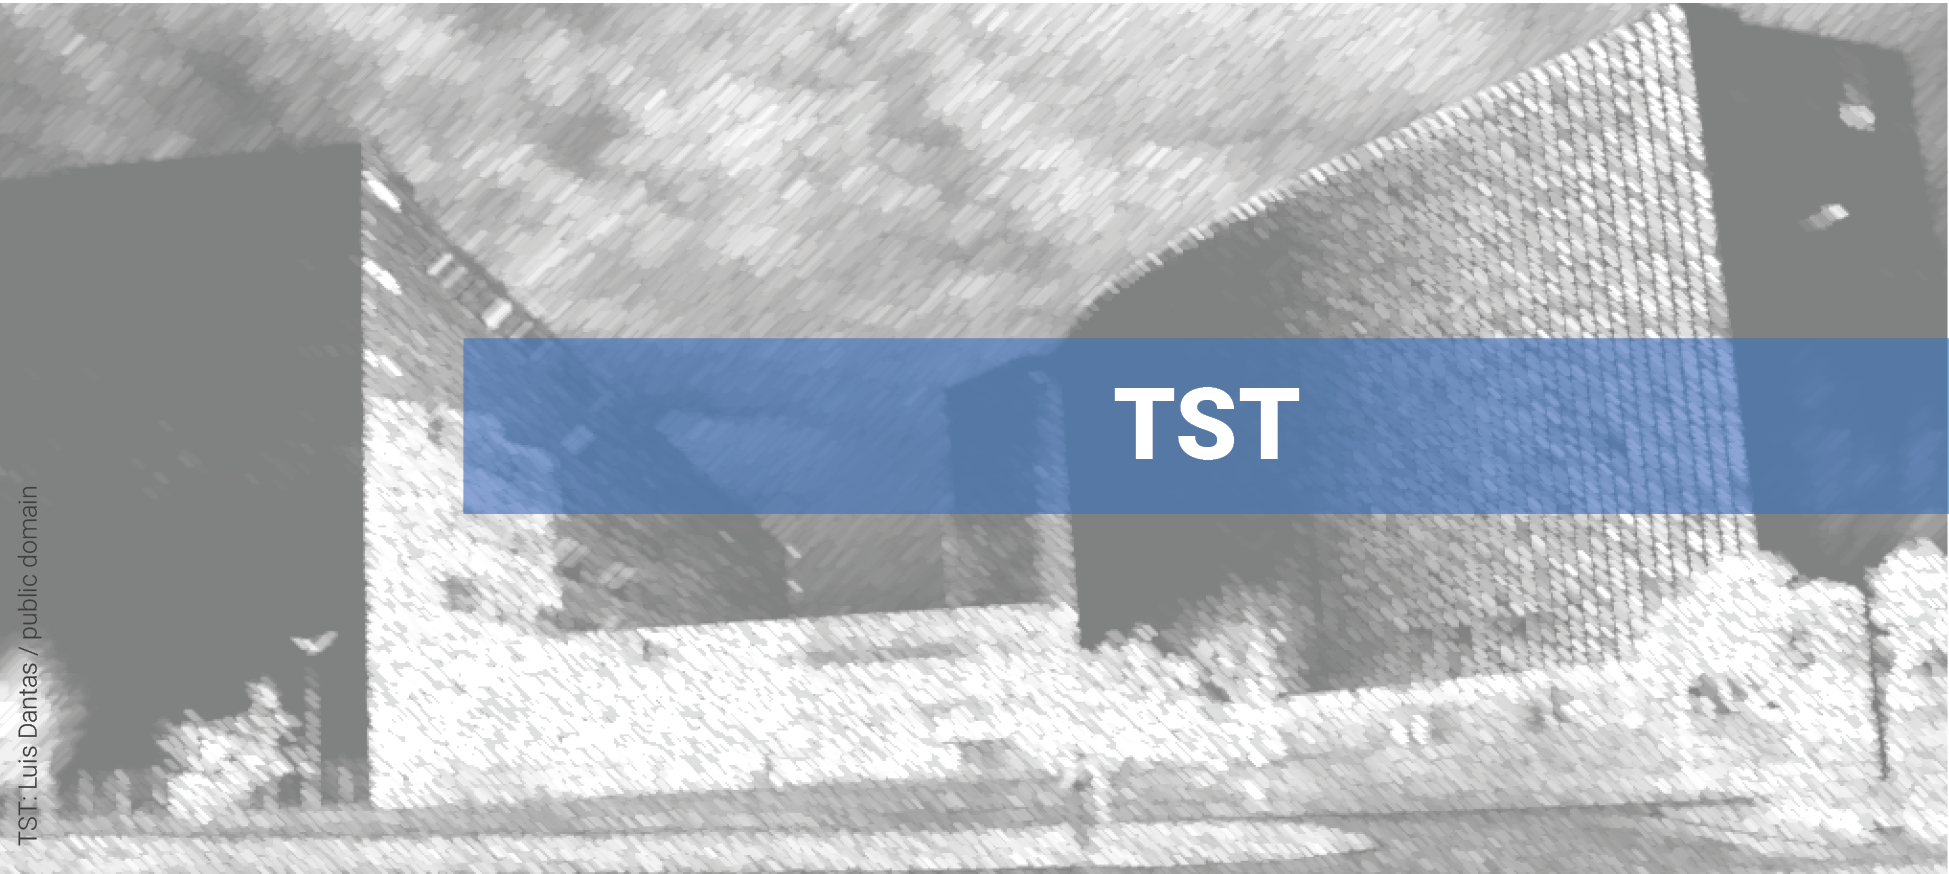 Ao fundo, vista externa do Superior Tribunal do Trabalho em preto e branco. Em primeiro plano, cortando parte da imagem horizontalmente, faixa azul onde se lê: TST.